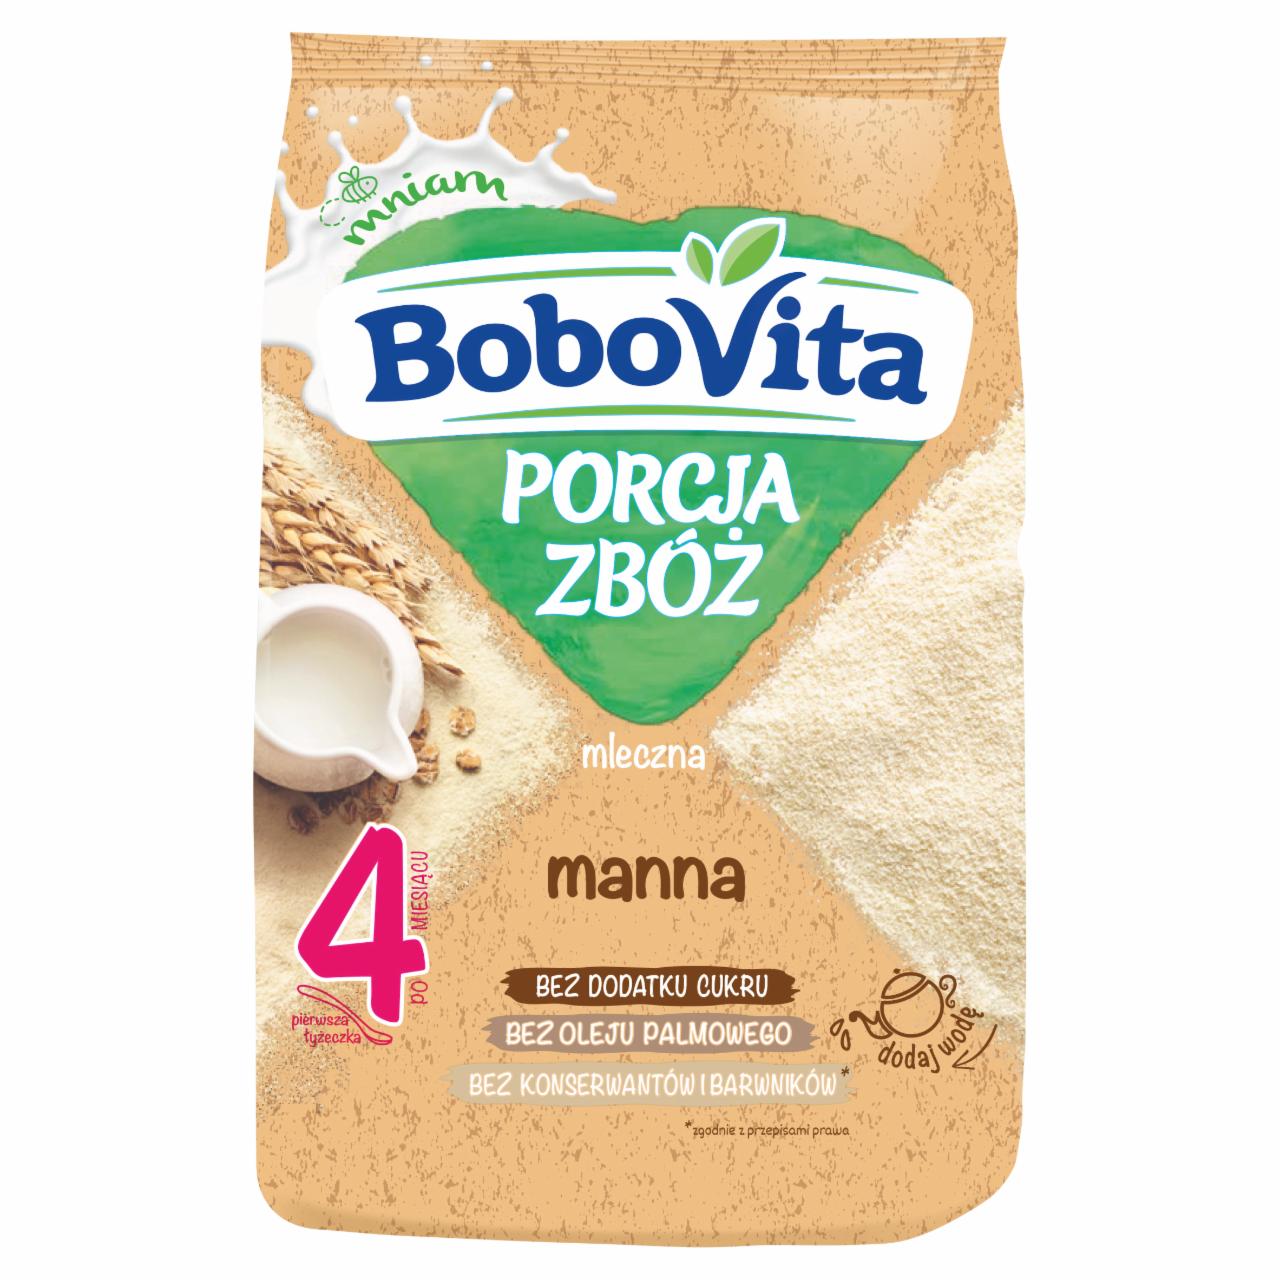 Zdjęcia - BoboVita Porcja zbóż Kaszka mleczna manna po 4 miesiącu 210 g